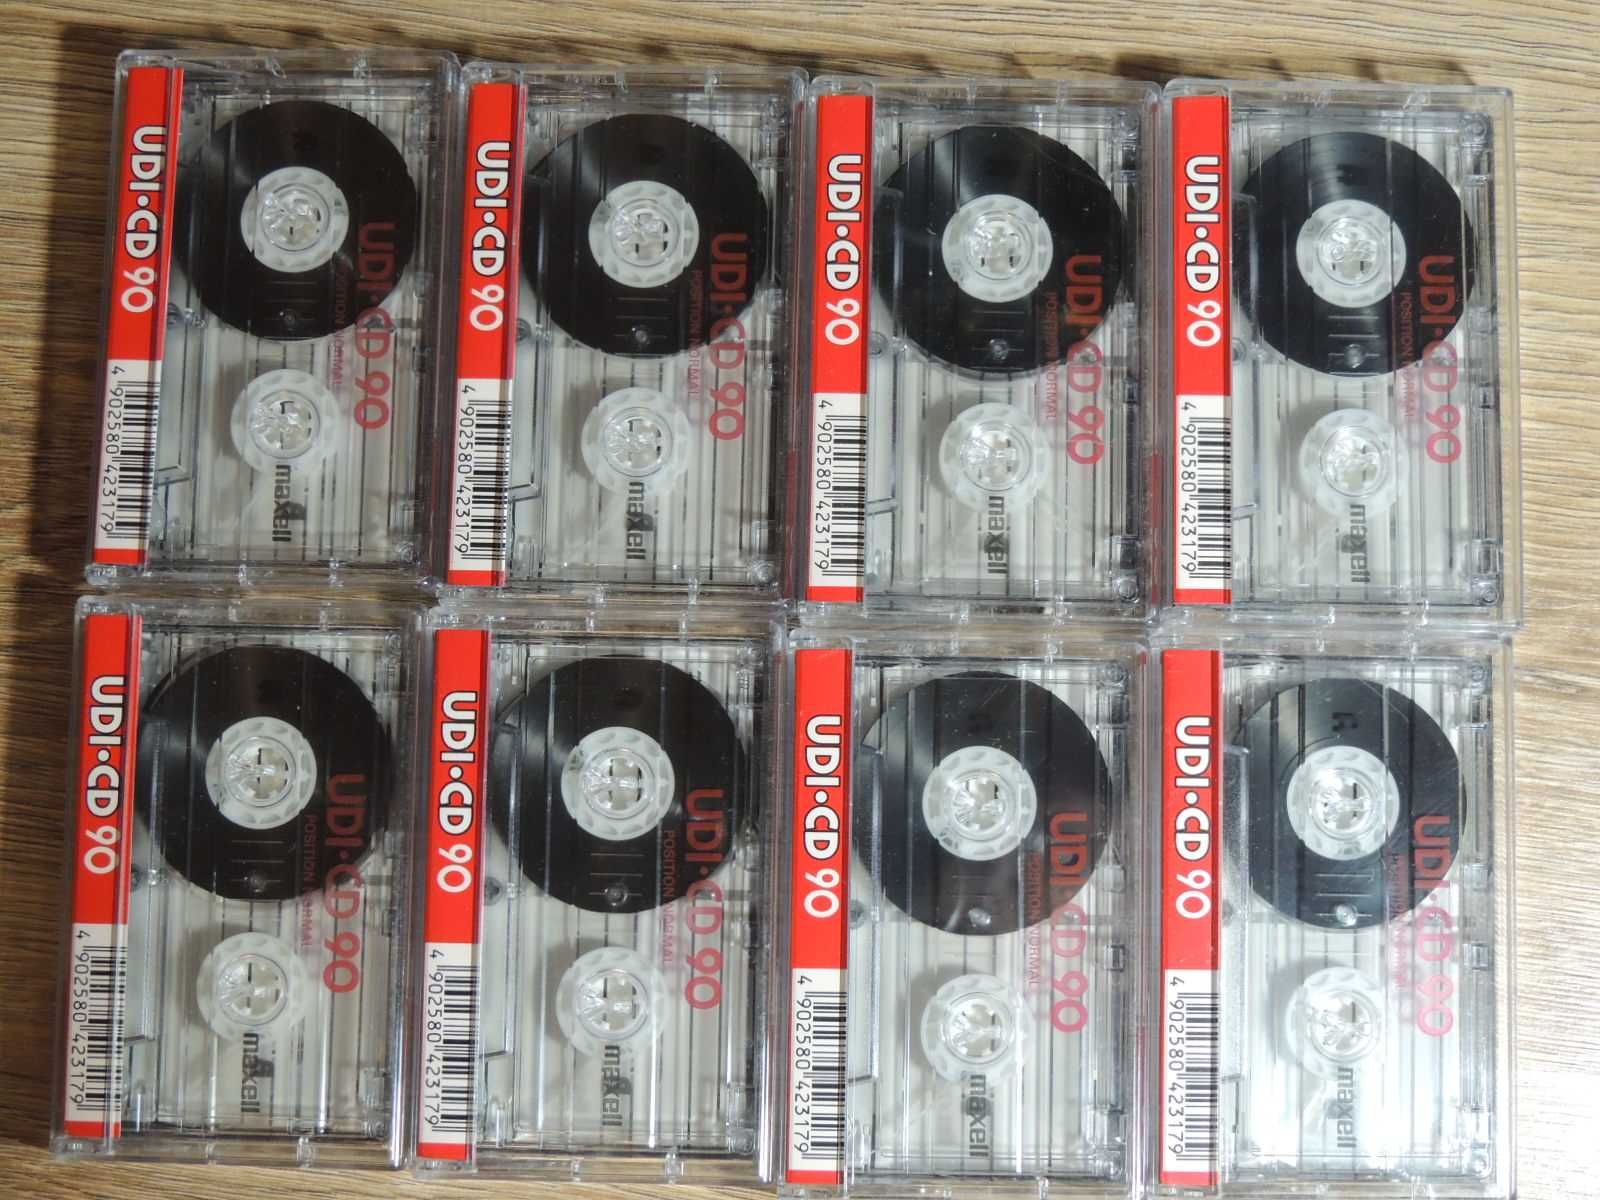 Maxell UDI-CD 90, zestaw 8 kaset